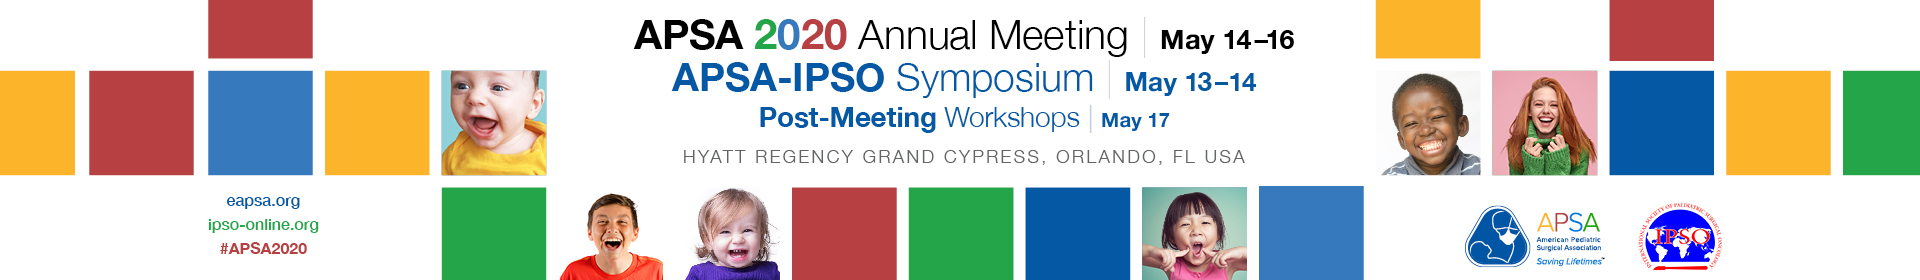 APSA 2020 Annual Meeting / APSA IPSO Symposium